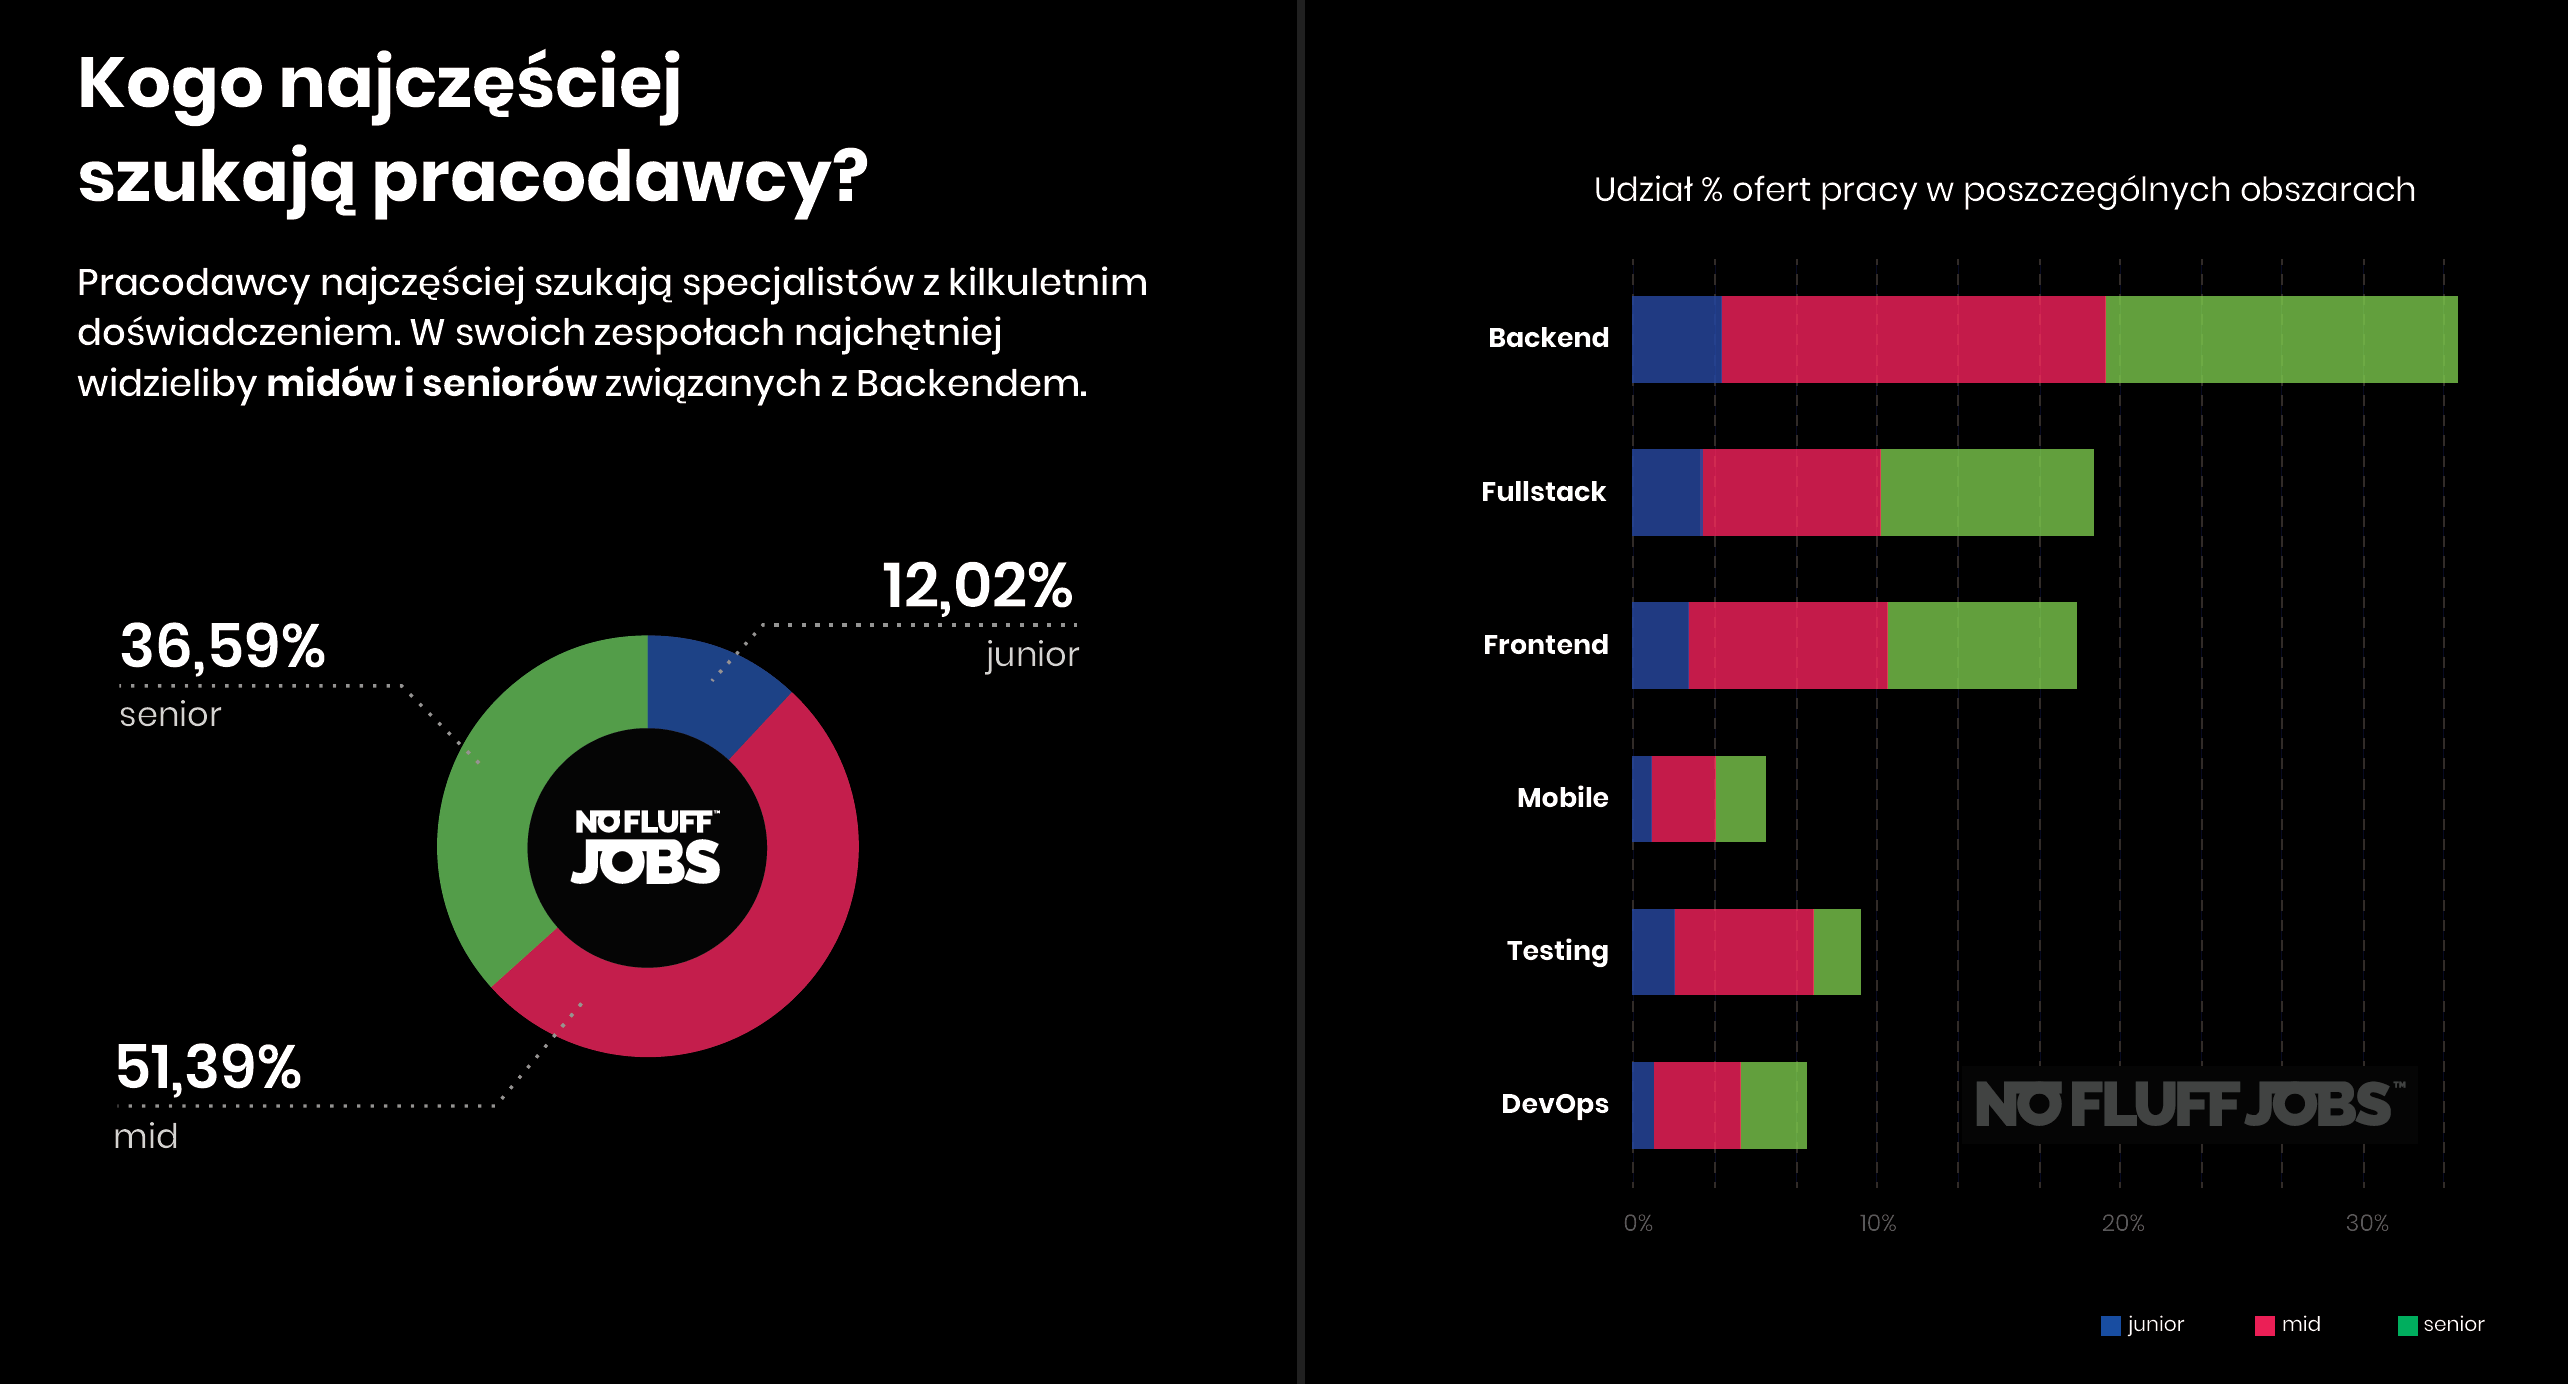 Kogo najczęściej poszukują pracodawcy IT w Polsce? (2019)